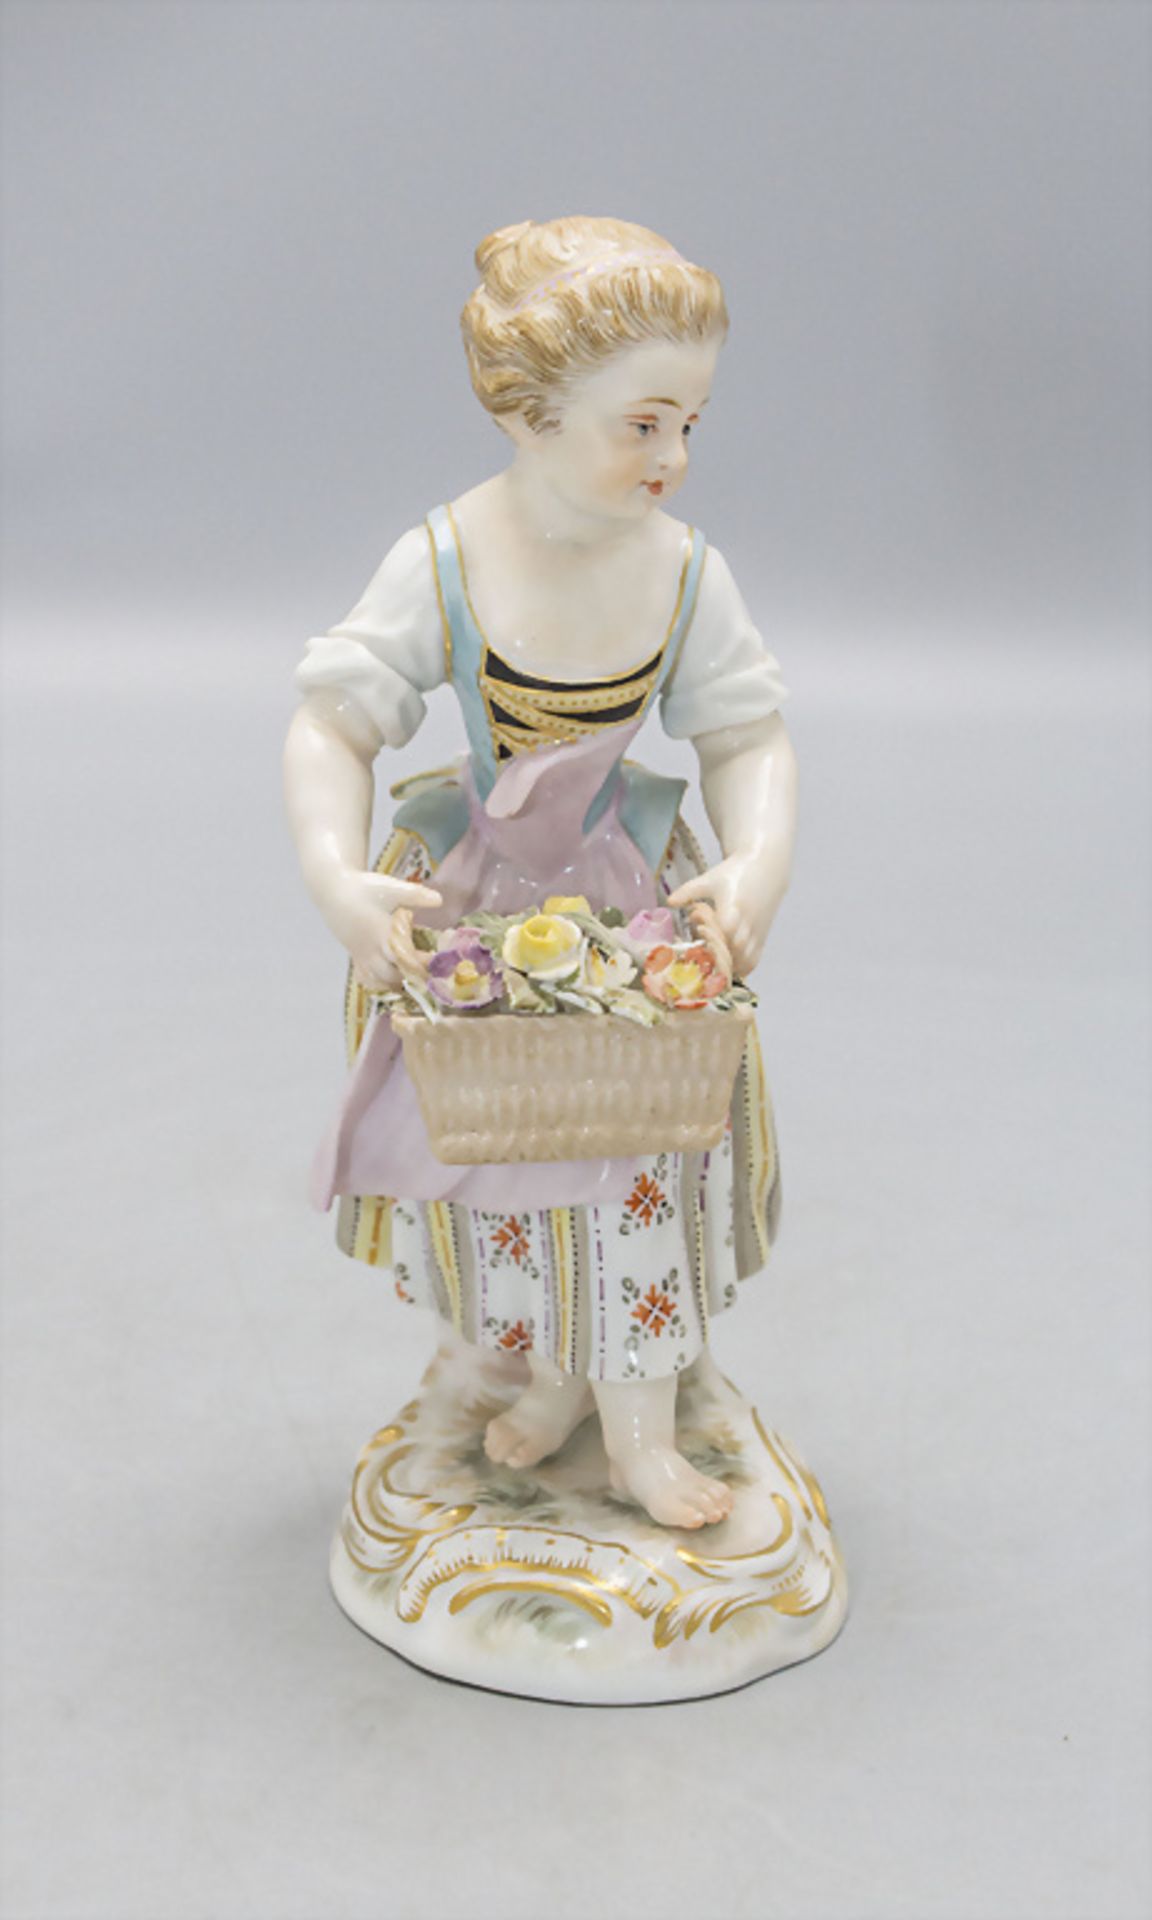 Gärtnerkind 'Mädchen mit Blumenkorb' / A gardener's child 'girl with flower basket', Meissen, ... - Bild 2 aus 4